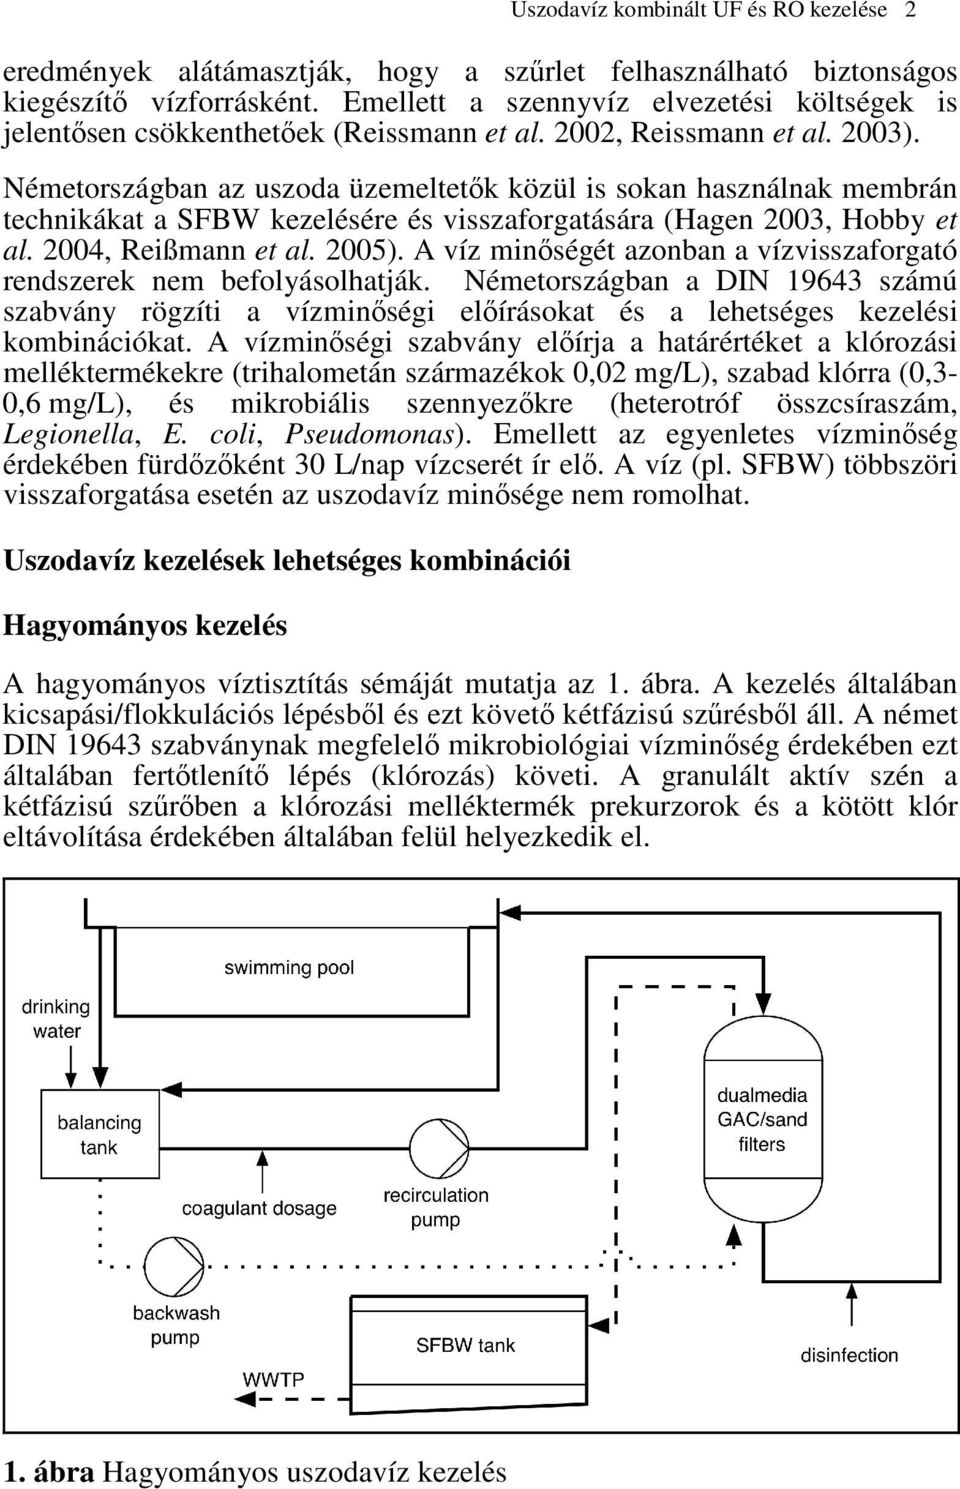 Németországban az uszoda üzemeltetk közül is sokan használnak membrán technikákat a SFBW kezelésére és visszaforgatására (Hagen 2003, Hobby et al. 2004, Reißmann et al. 2005).